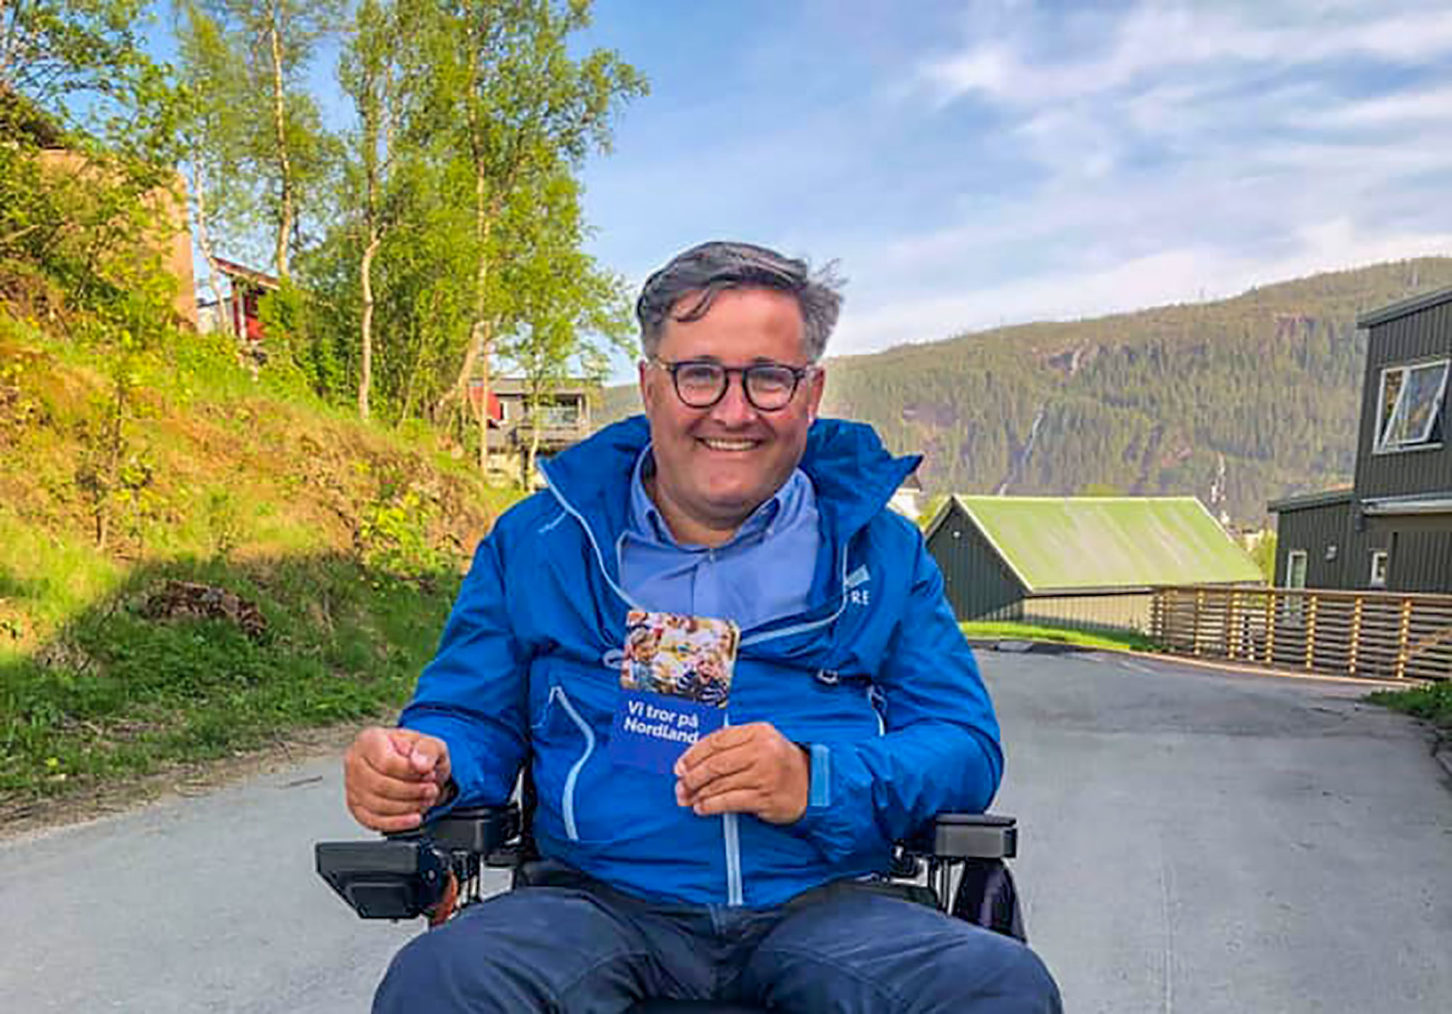 Gaute Ove Larsen i elektrisk rullestol. Han holder en valgkampbrosjyre og har på seg blå jakke med Høyre-logo.